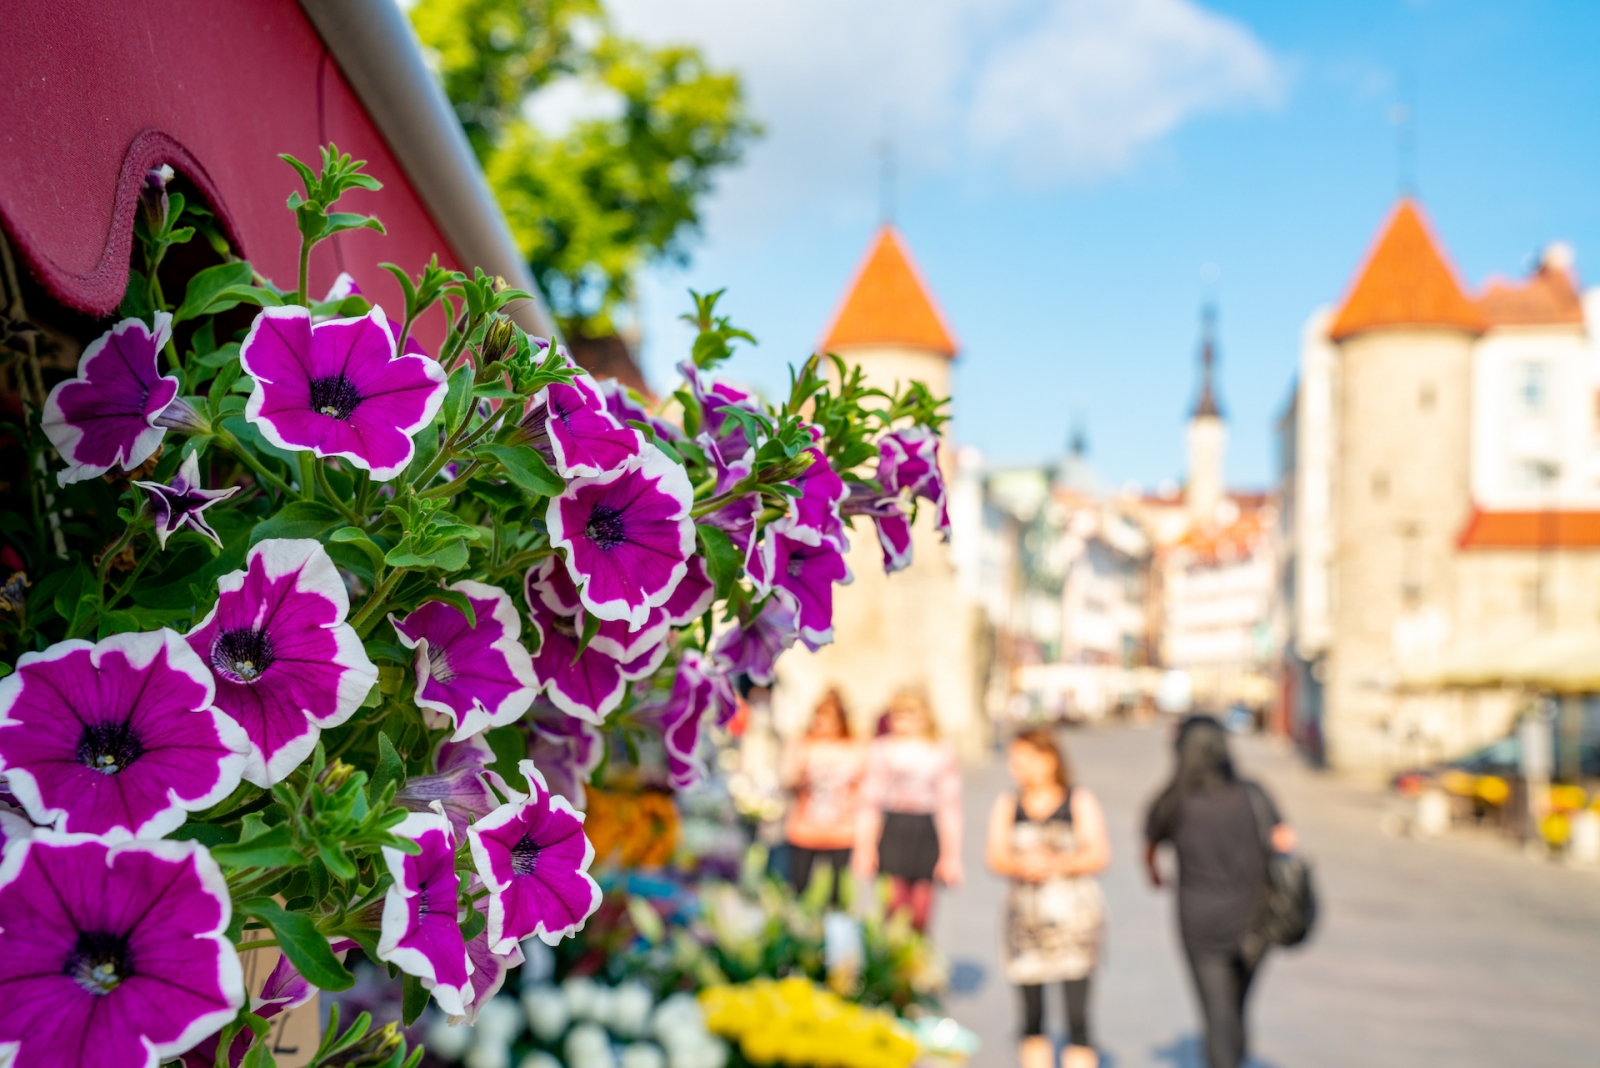 Bellissimi fiori nel mezzo della città vecchia di Tallinn.